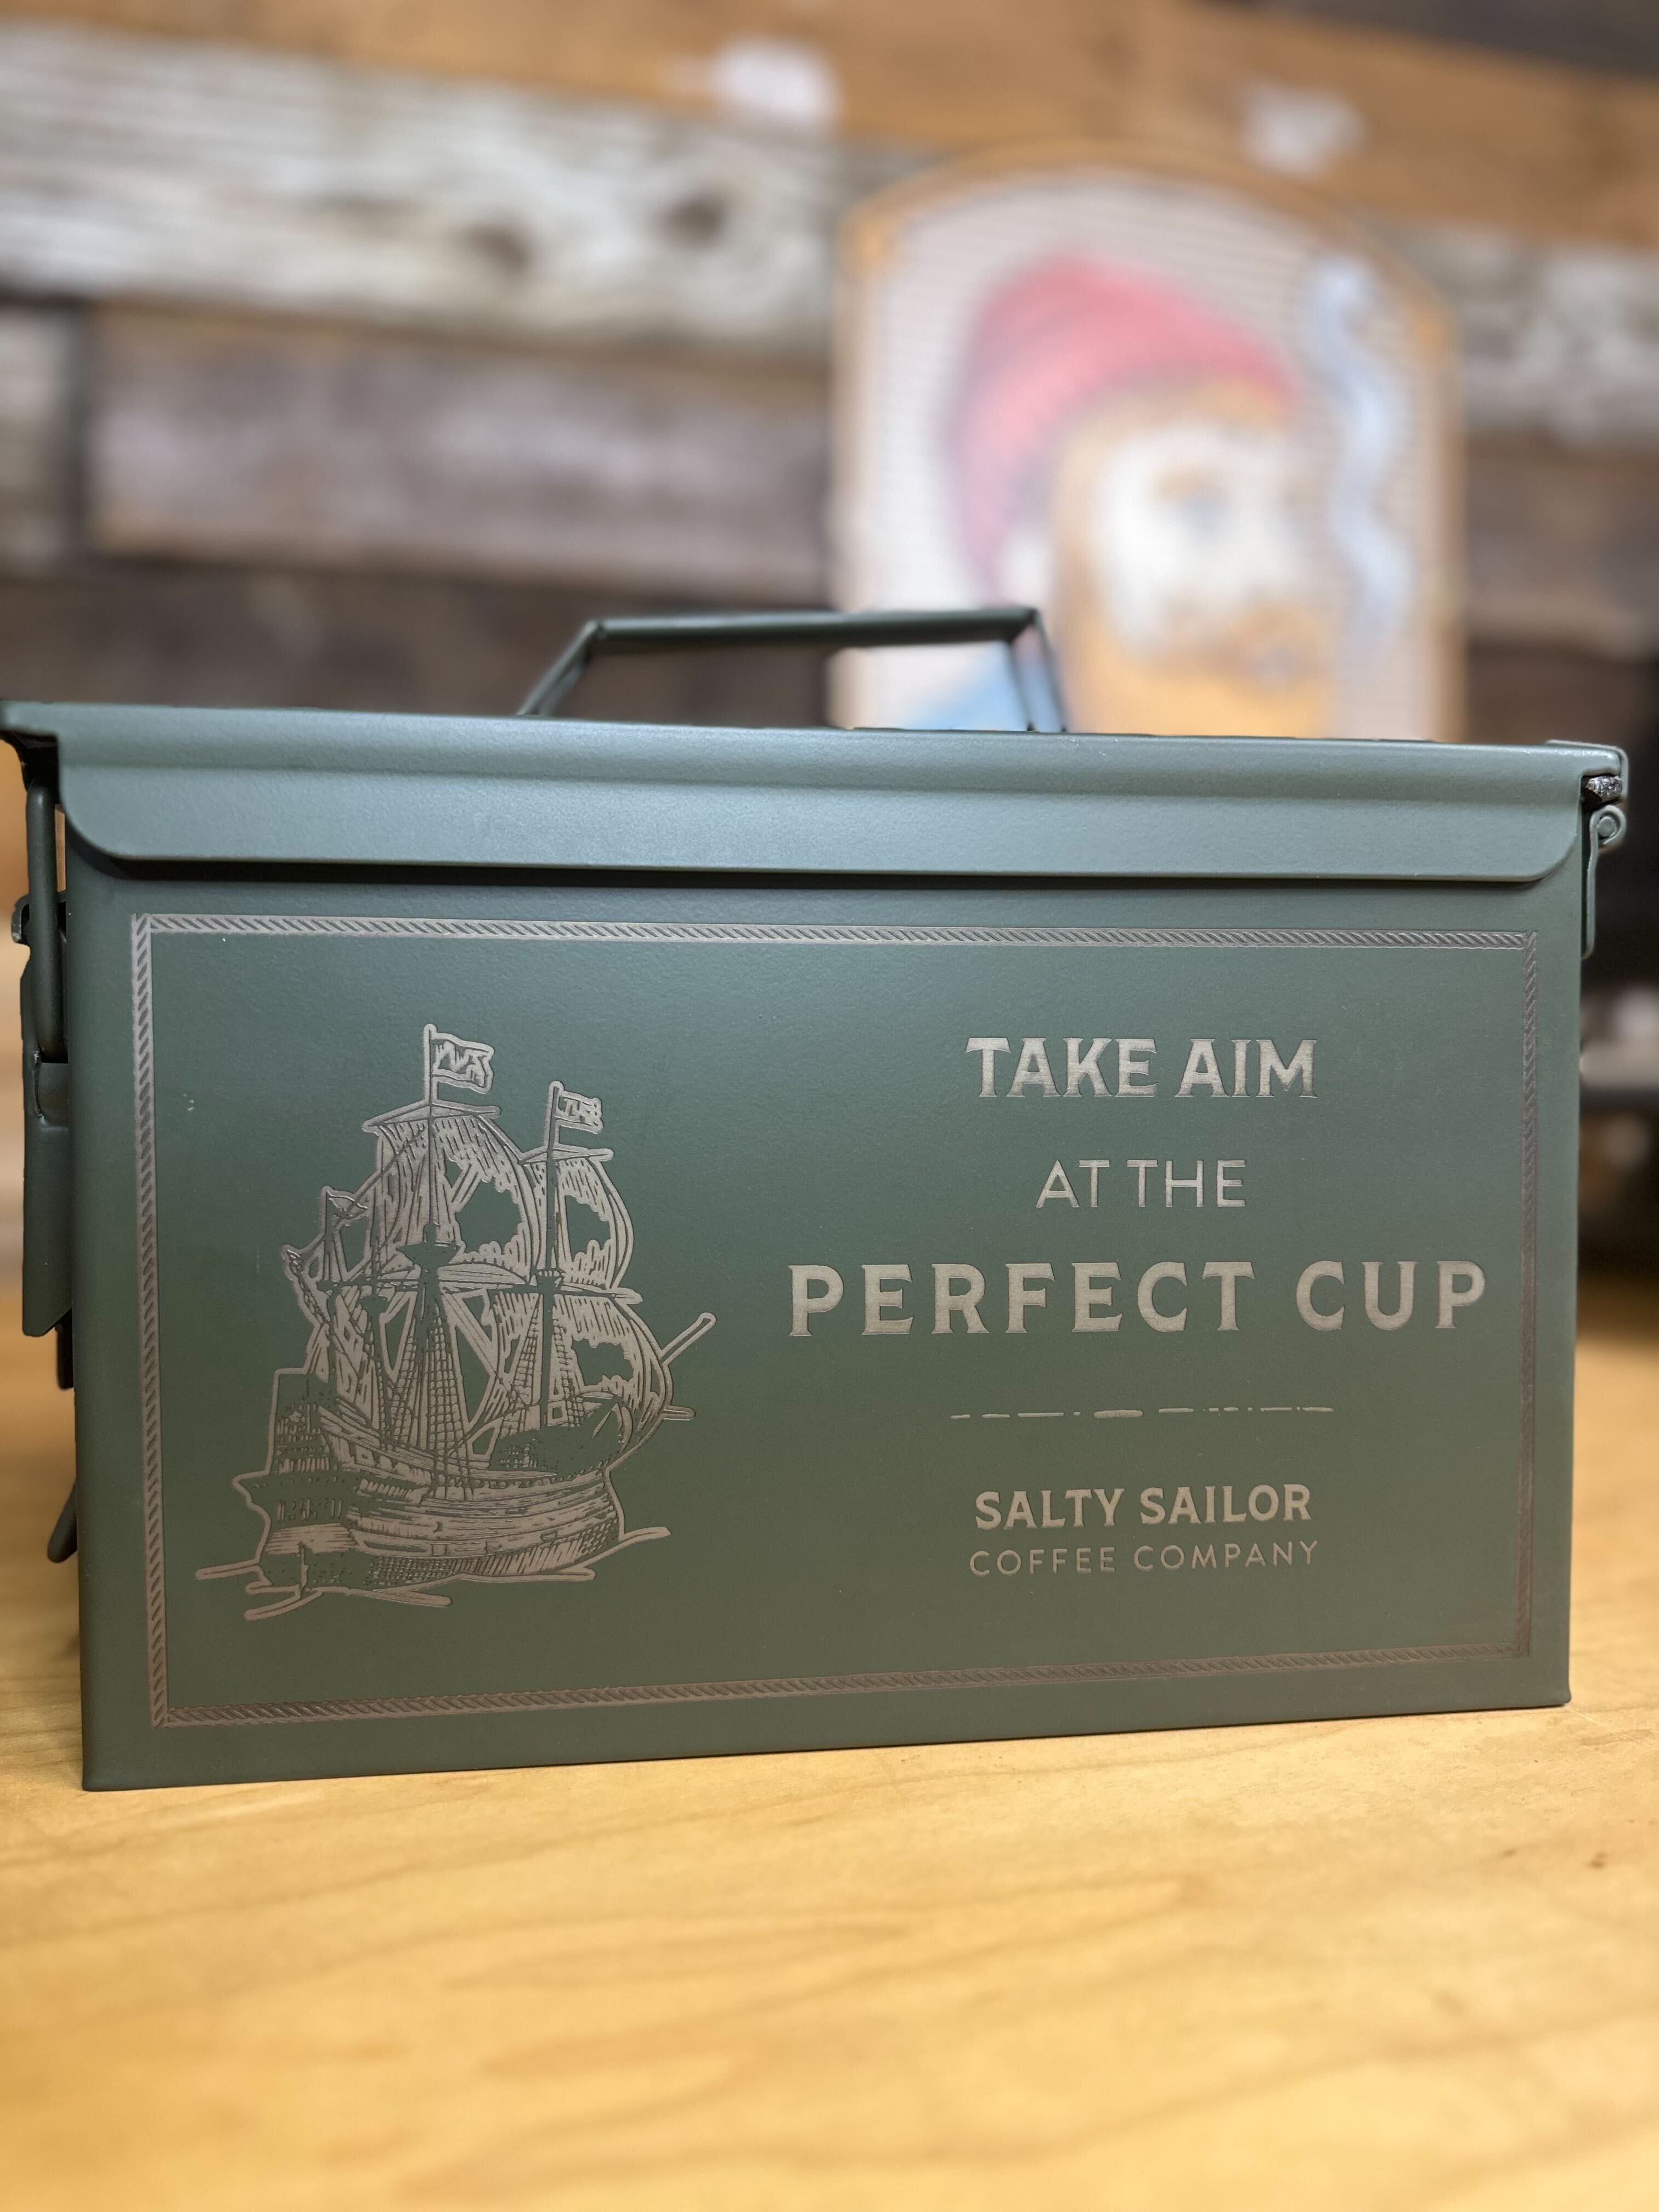 Salty Sailor's Bulletproof Voyage Kit